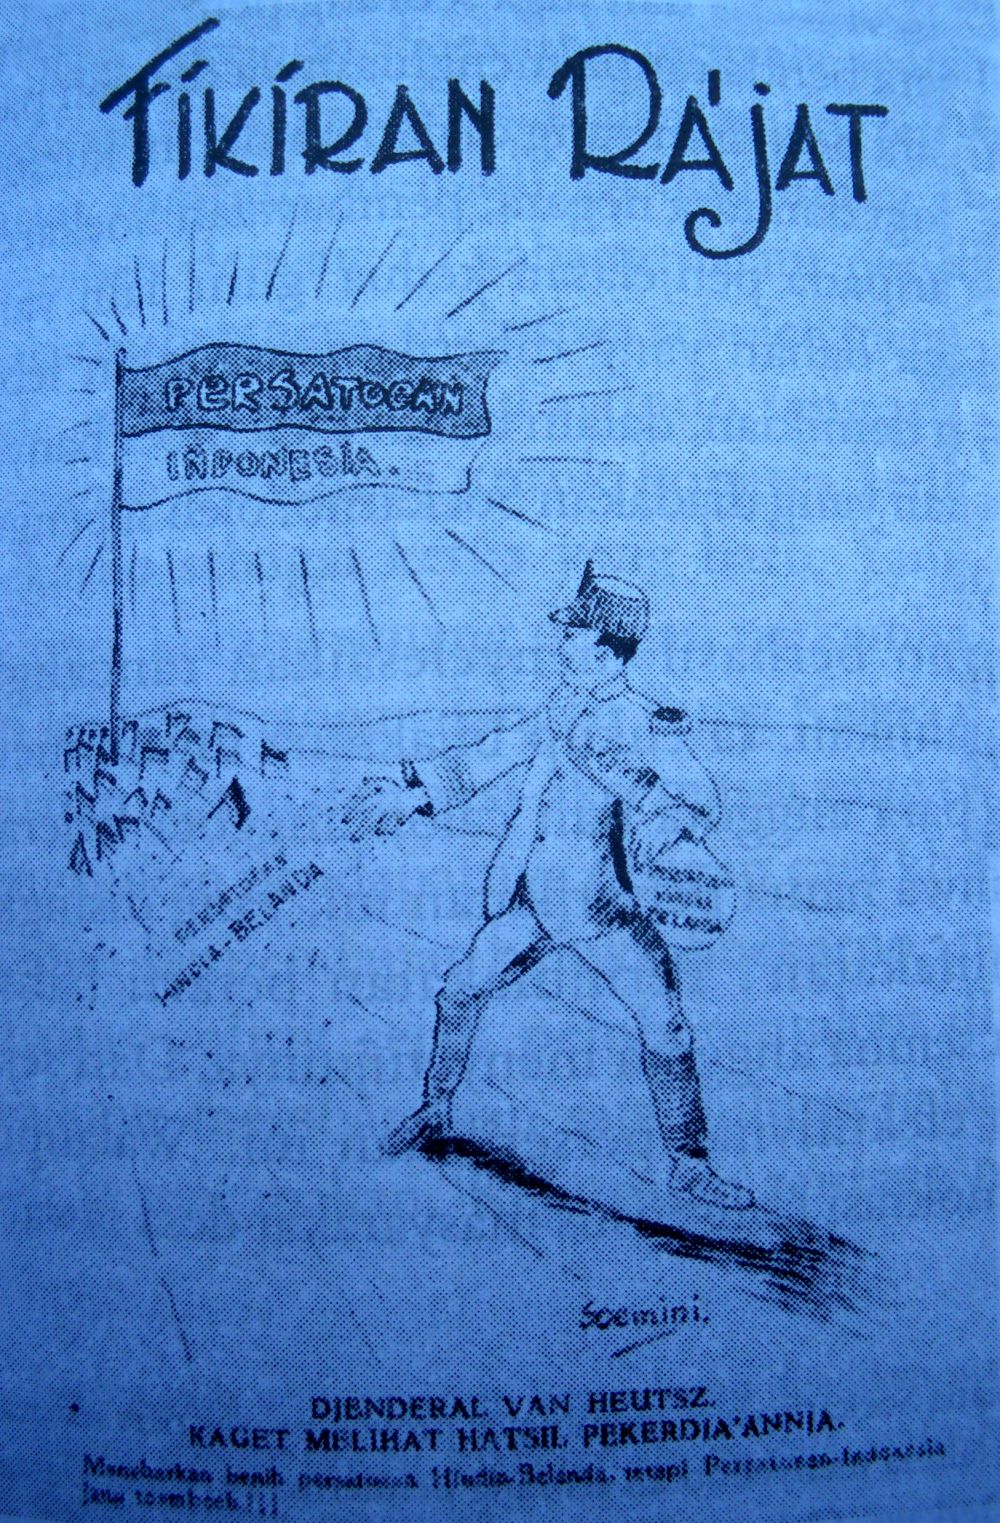 4 Karikatur karya Bung Karno ini cocok jadi refleksi politisi saat ini